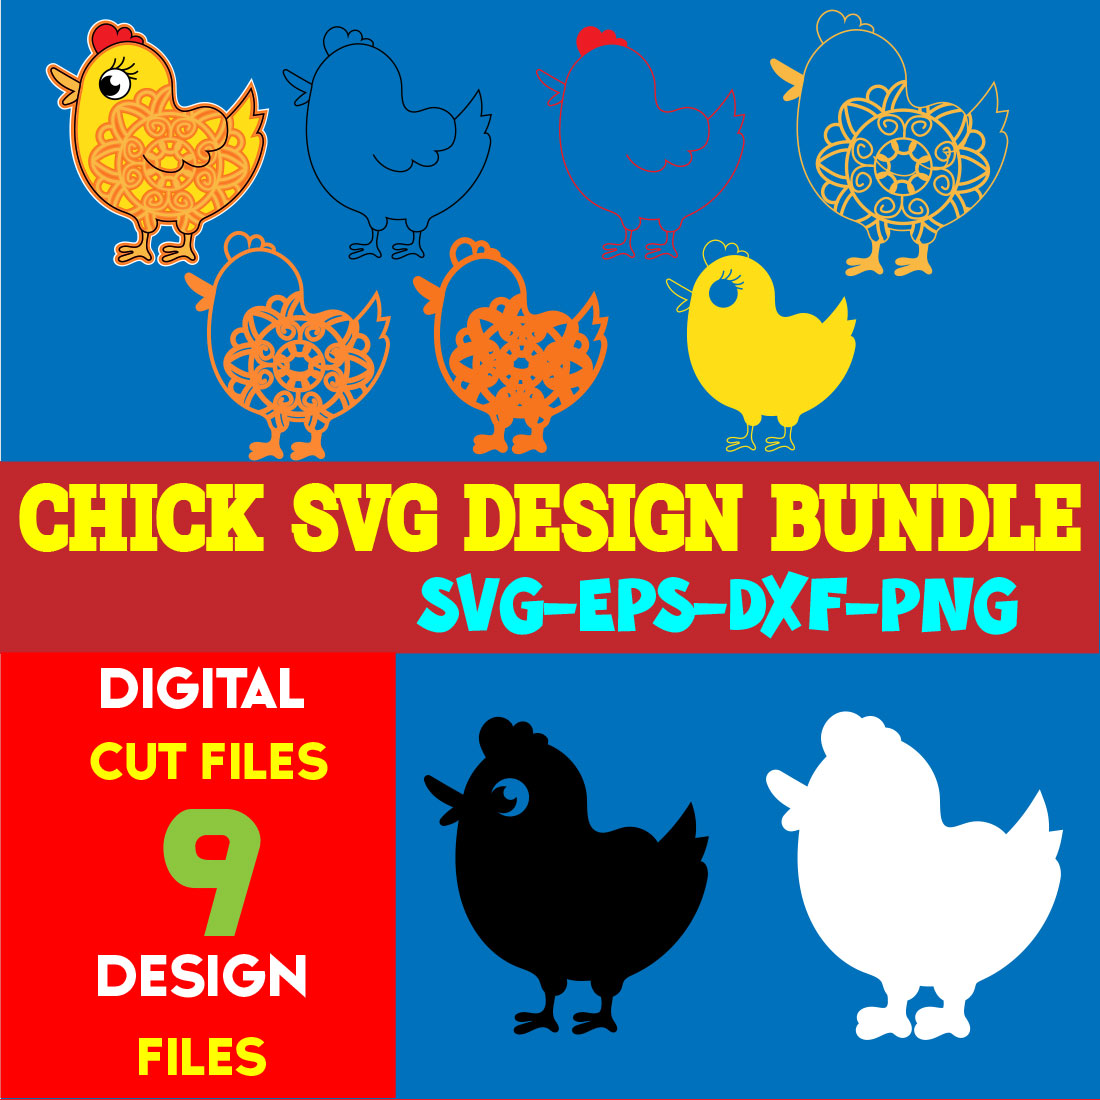 Chick SVG Design Bundle cover image.